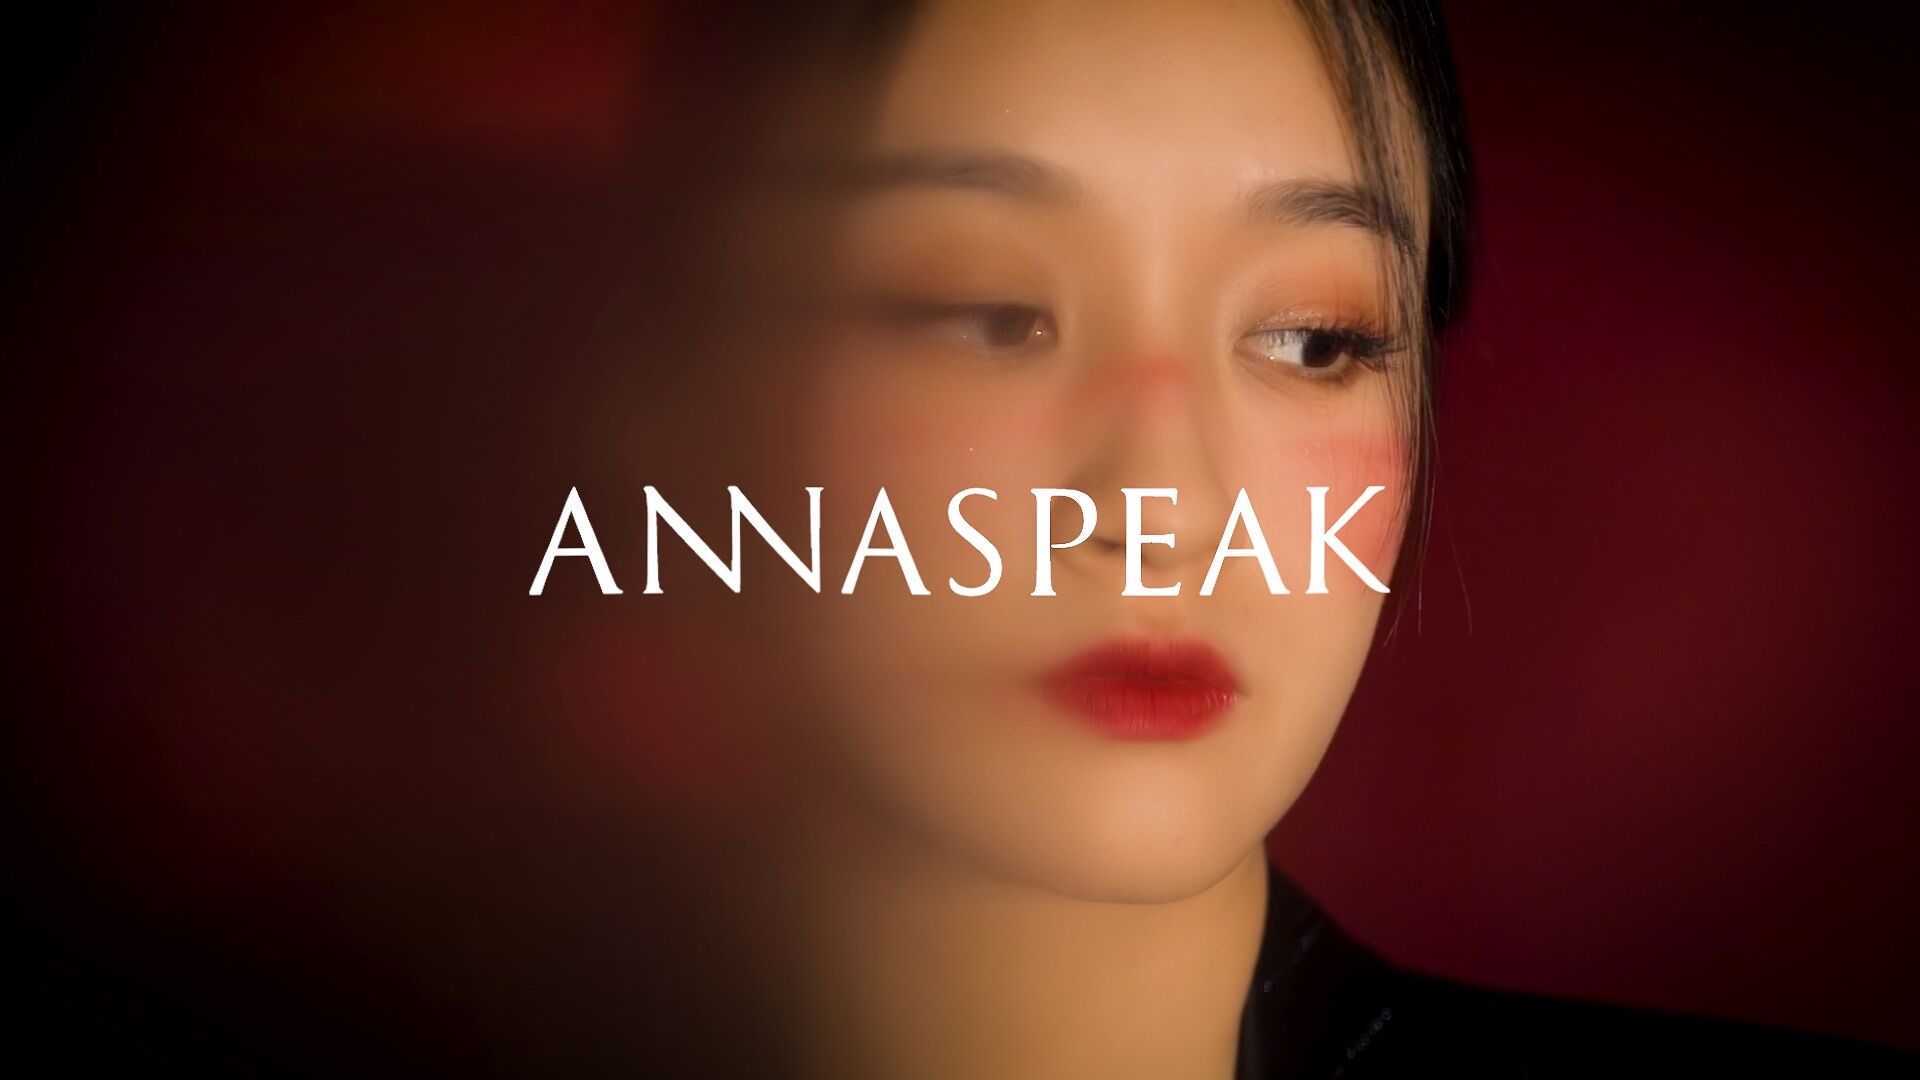 ANNASPEAK SS21 独立女性的【自画像】品牌短片